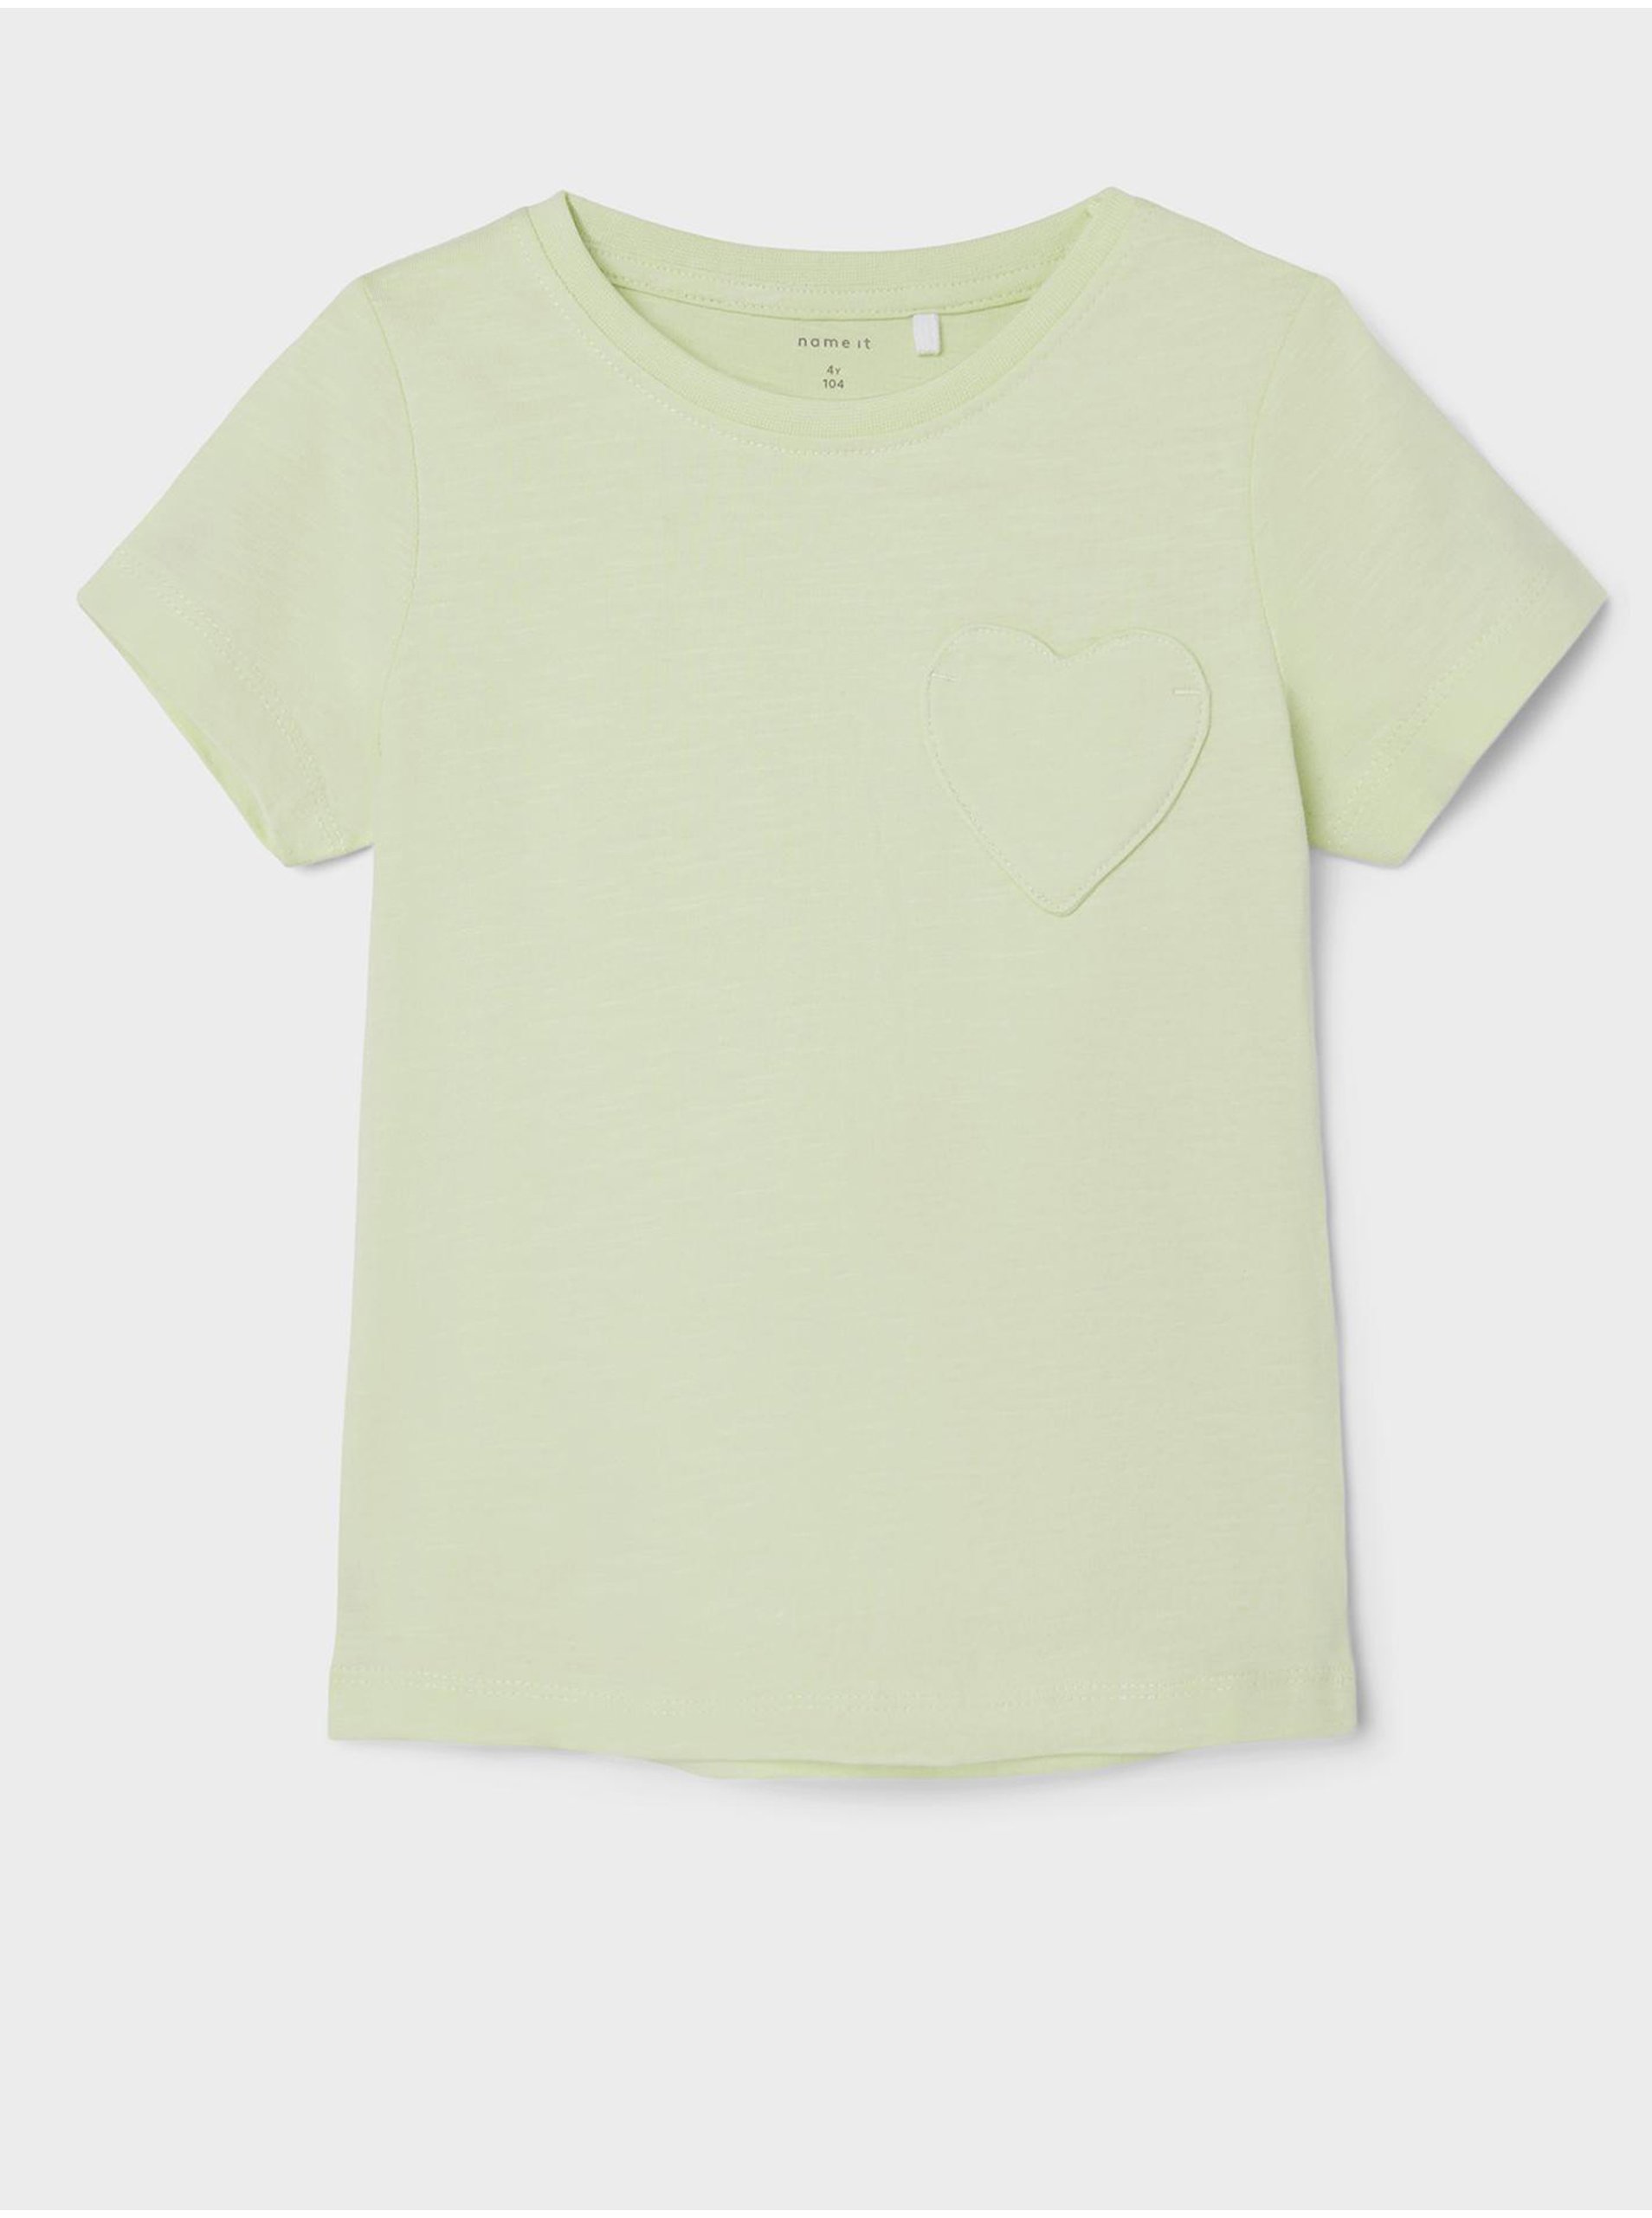 Lacno Svetlozelené dievčenské tričko name it Dorthe